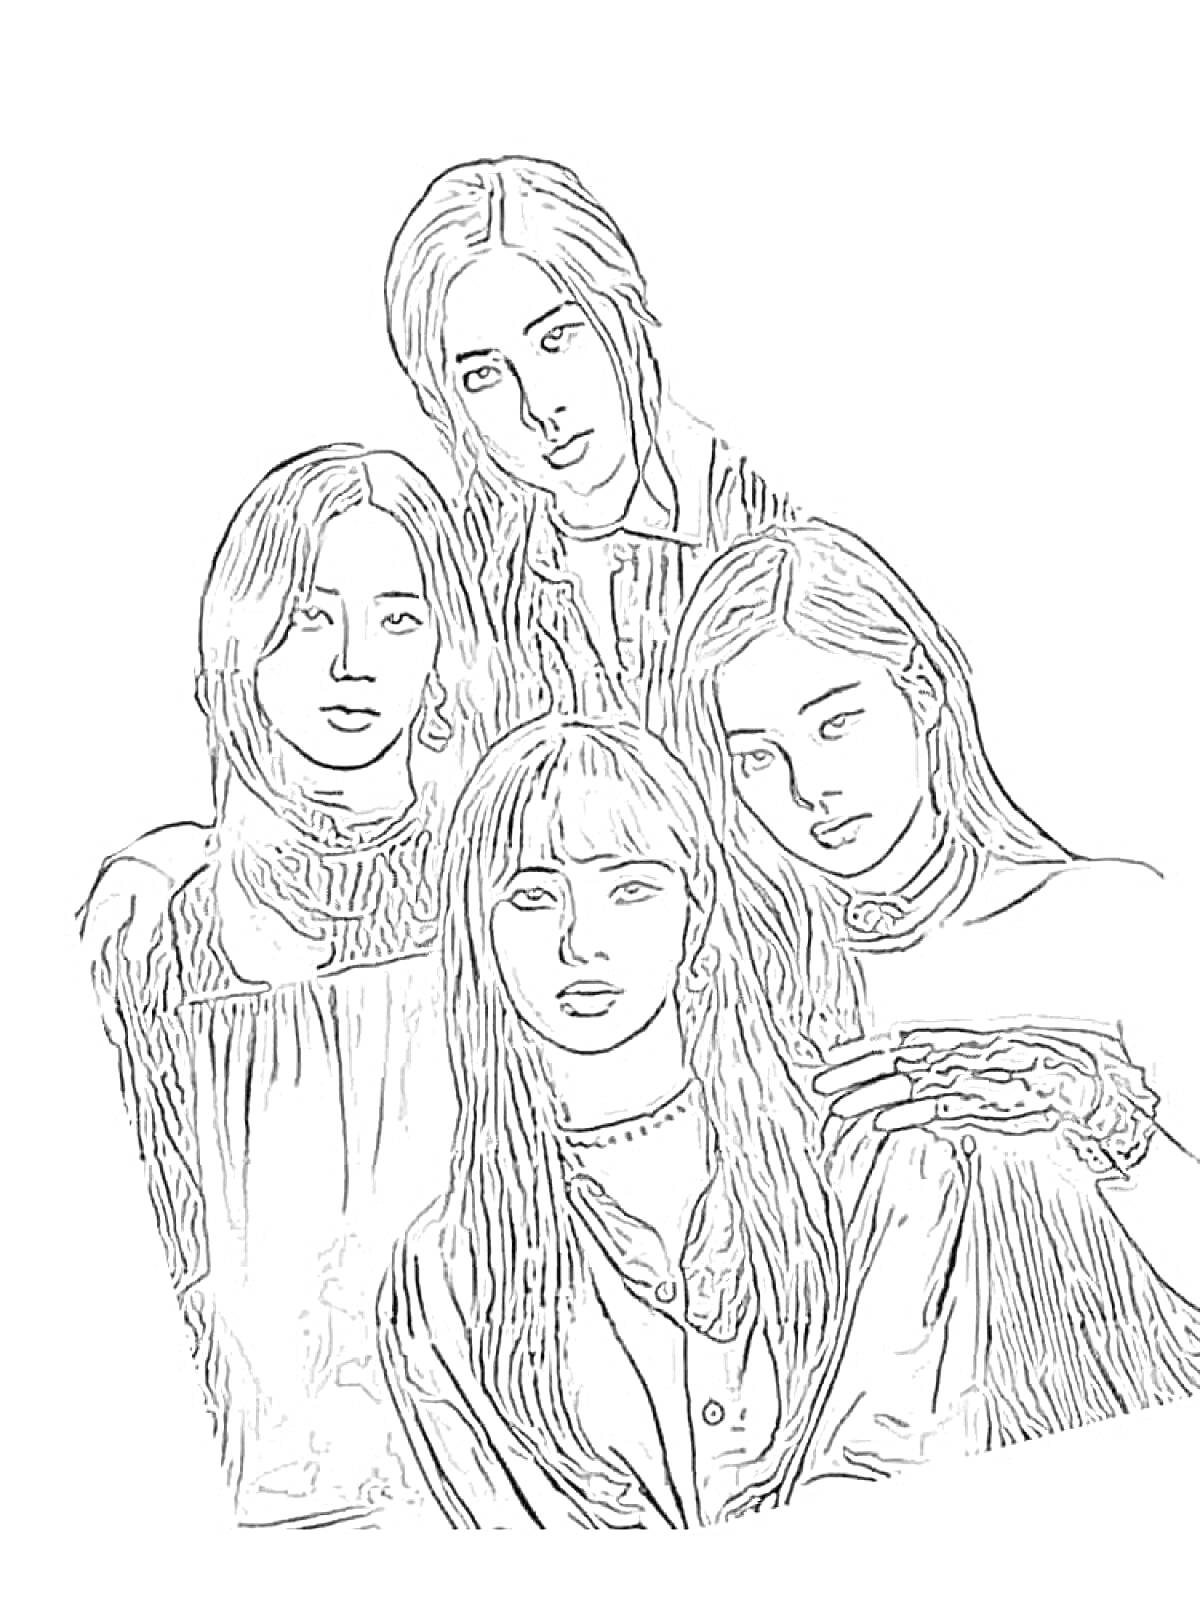 Четыре девушки с длинными волосами в одежде с воротниками и рюшами